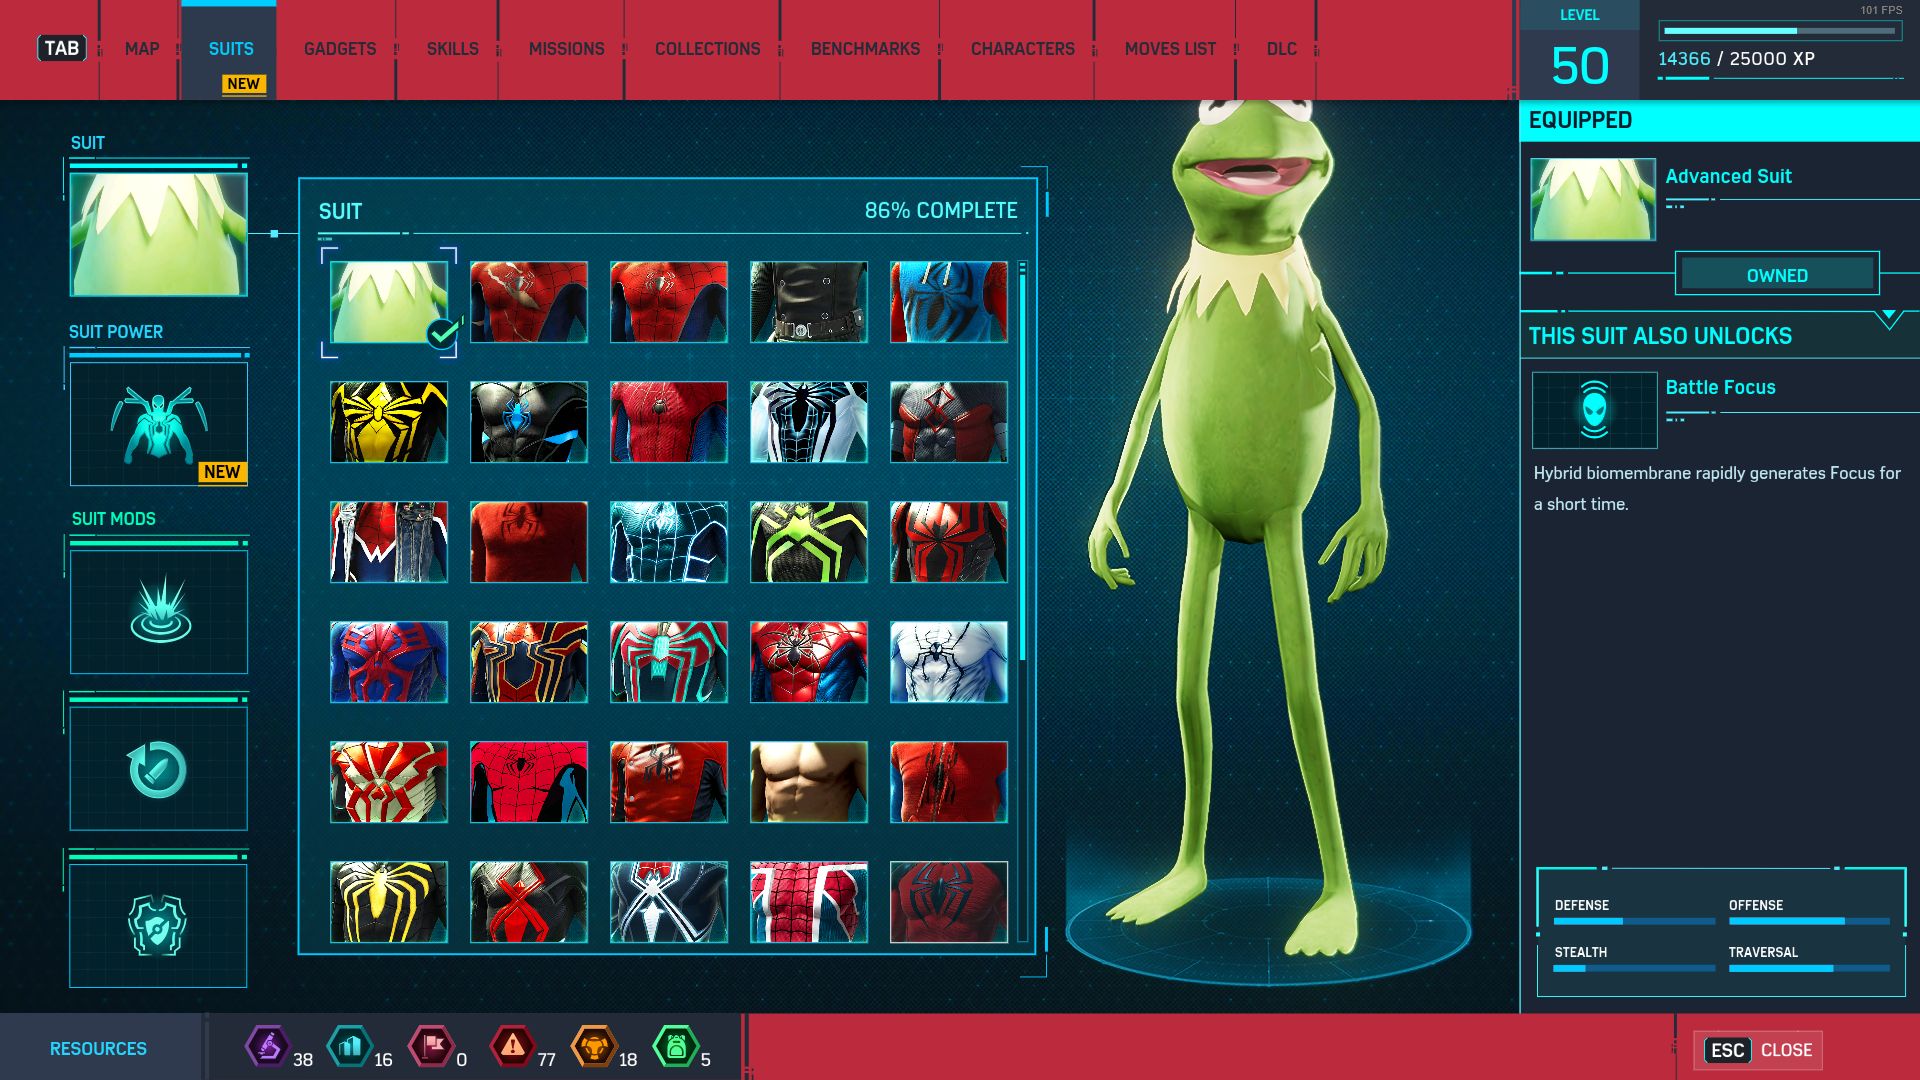 Скриншот мода с лягушонком Кермитом. Источник: Nexus Mods